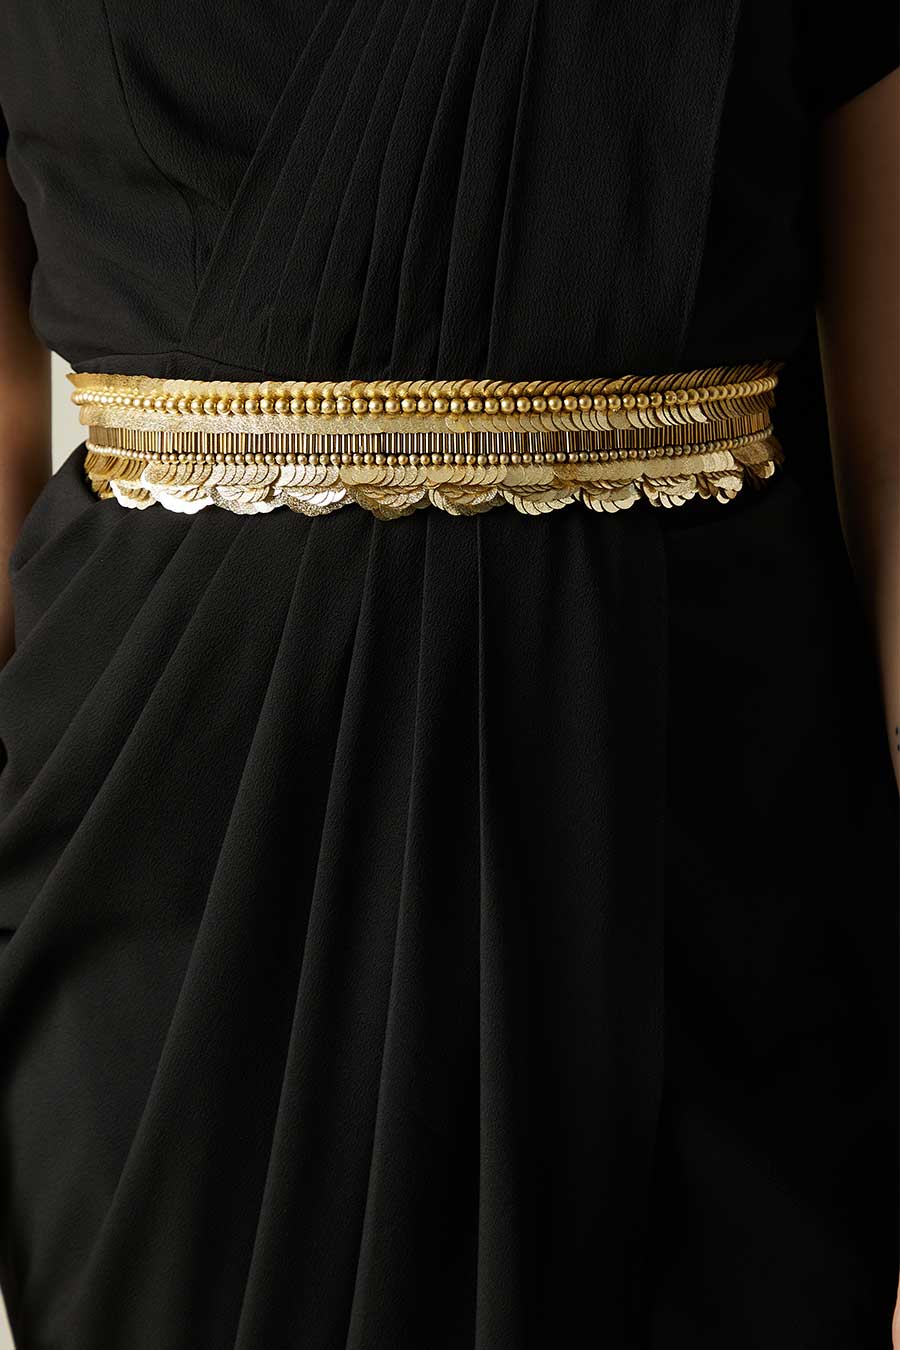 Black Saree Dress With Molten Gold Belt